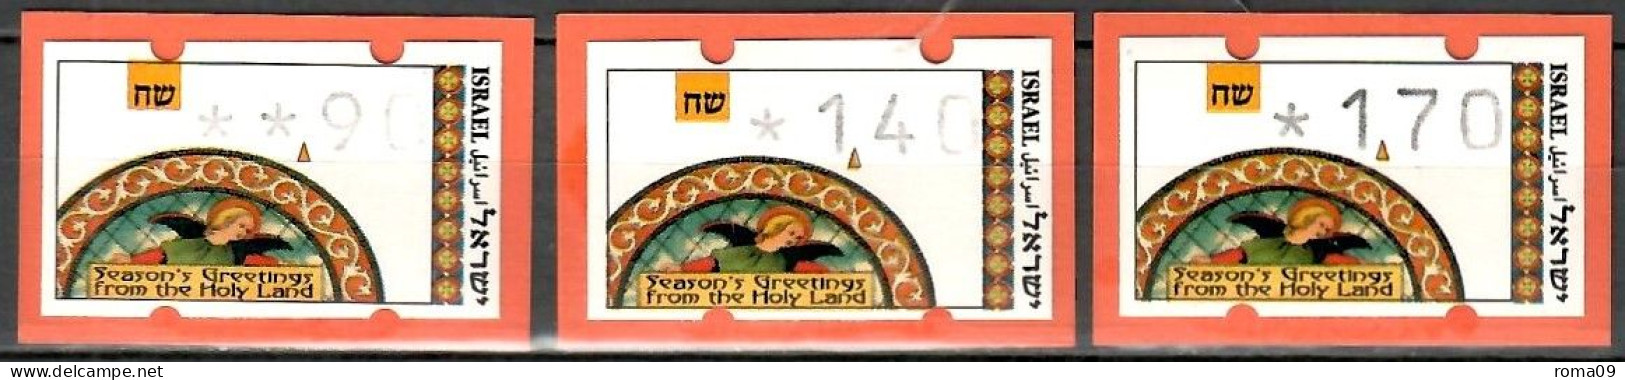 Israel, ATM (Klüssendorf); MiNr. 3; 0,90/1,40/1,70; Postfrisch, Automaten Nr. 023; A-2696 - Affrancature Meccaniche/Frama